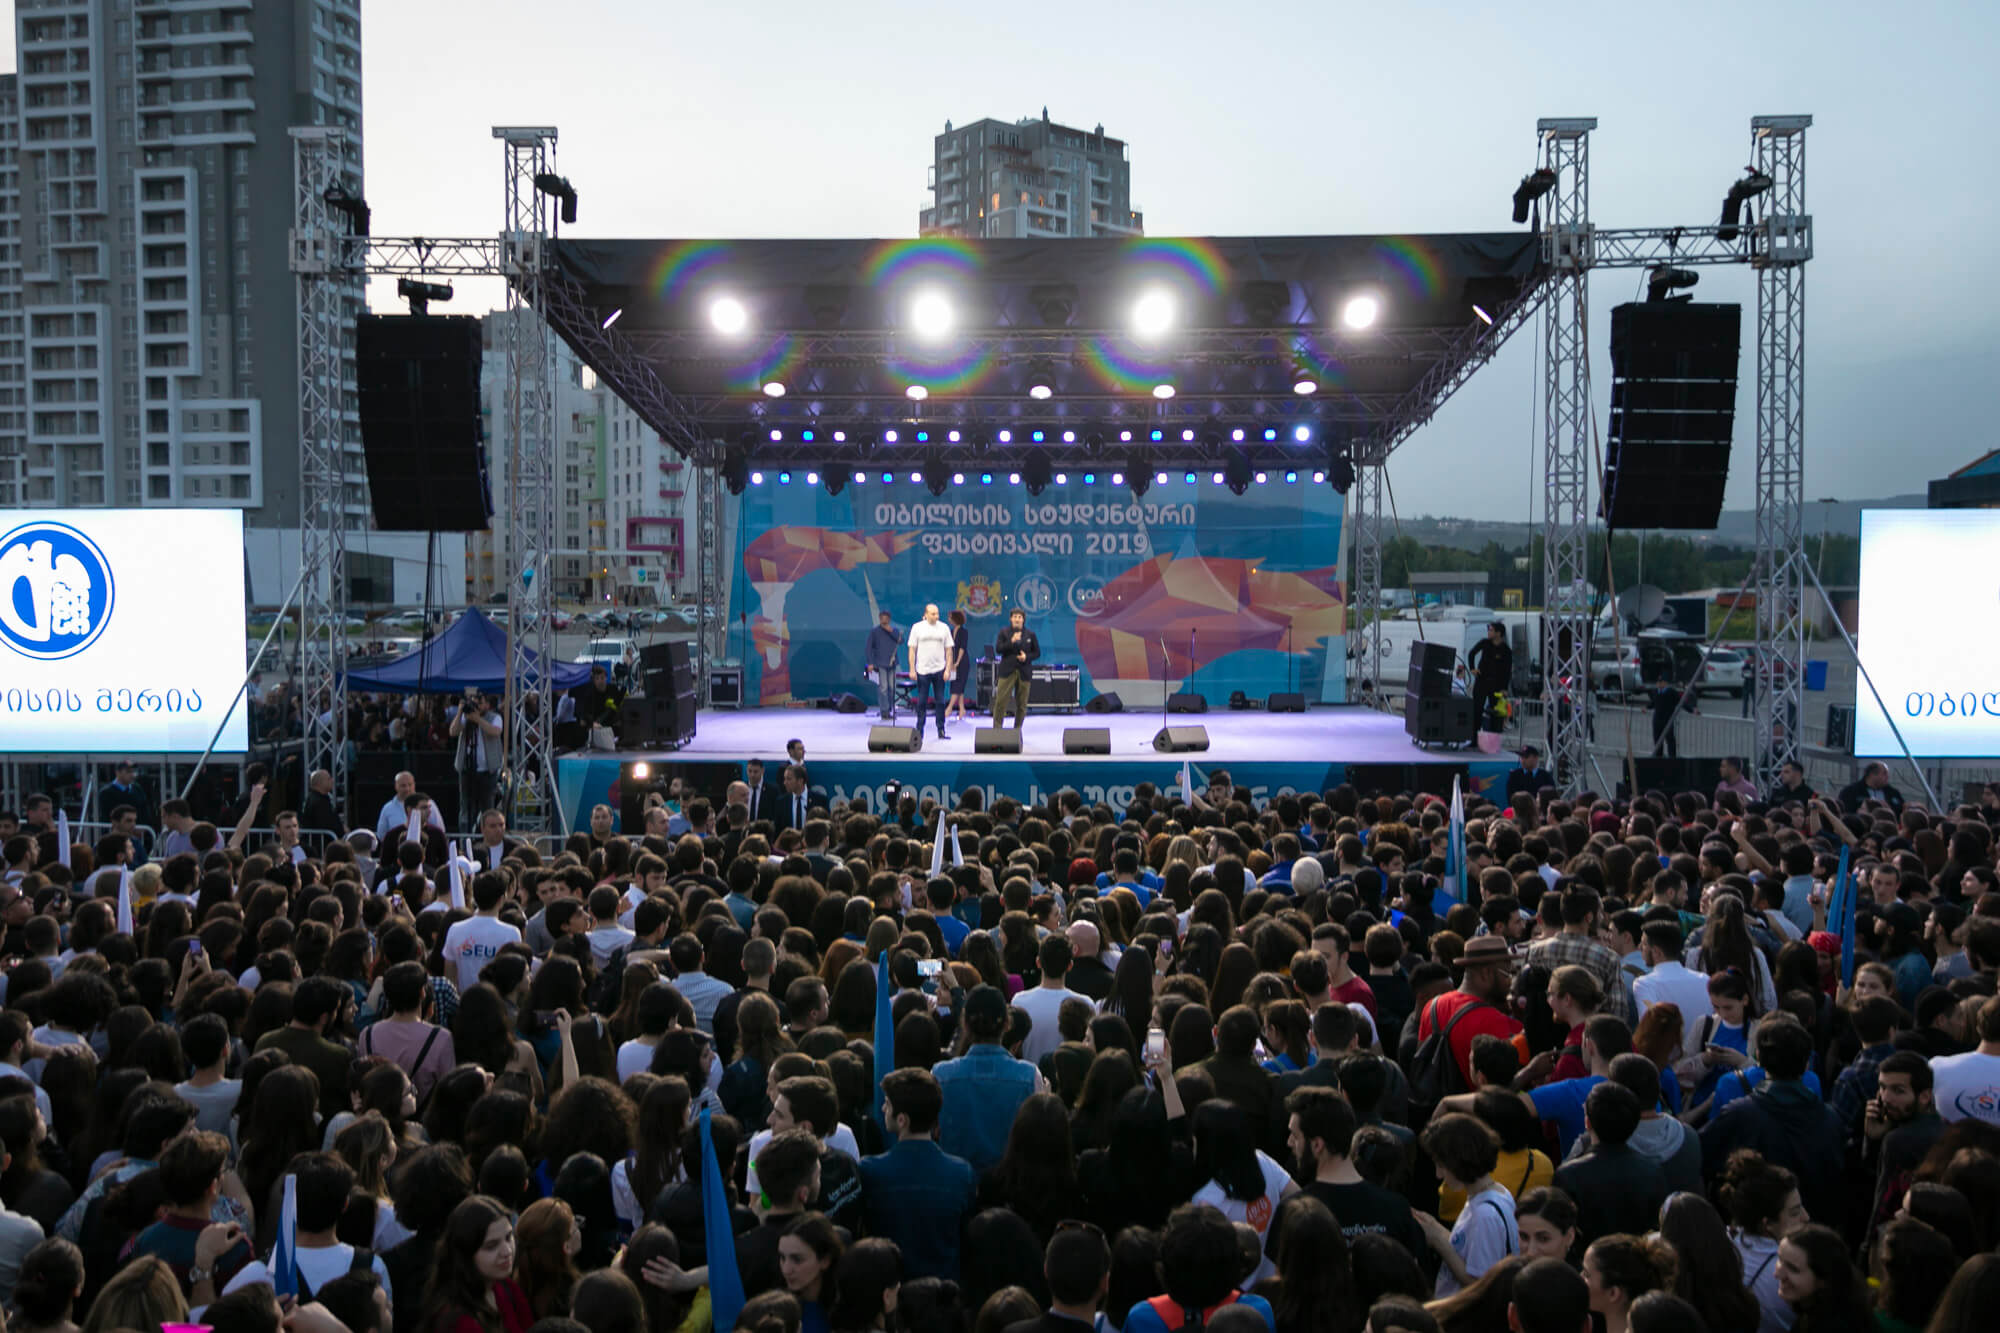 افتتاح مهرجان الطلاب 2019 في تبليسي اليوم